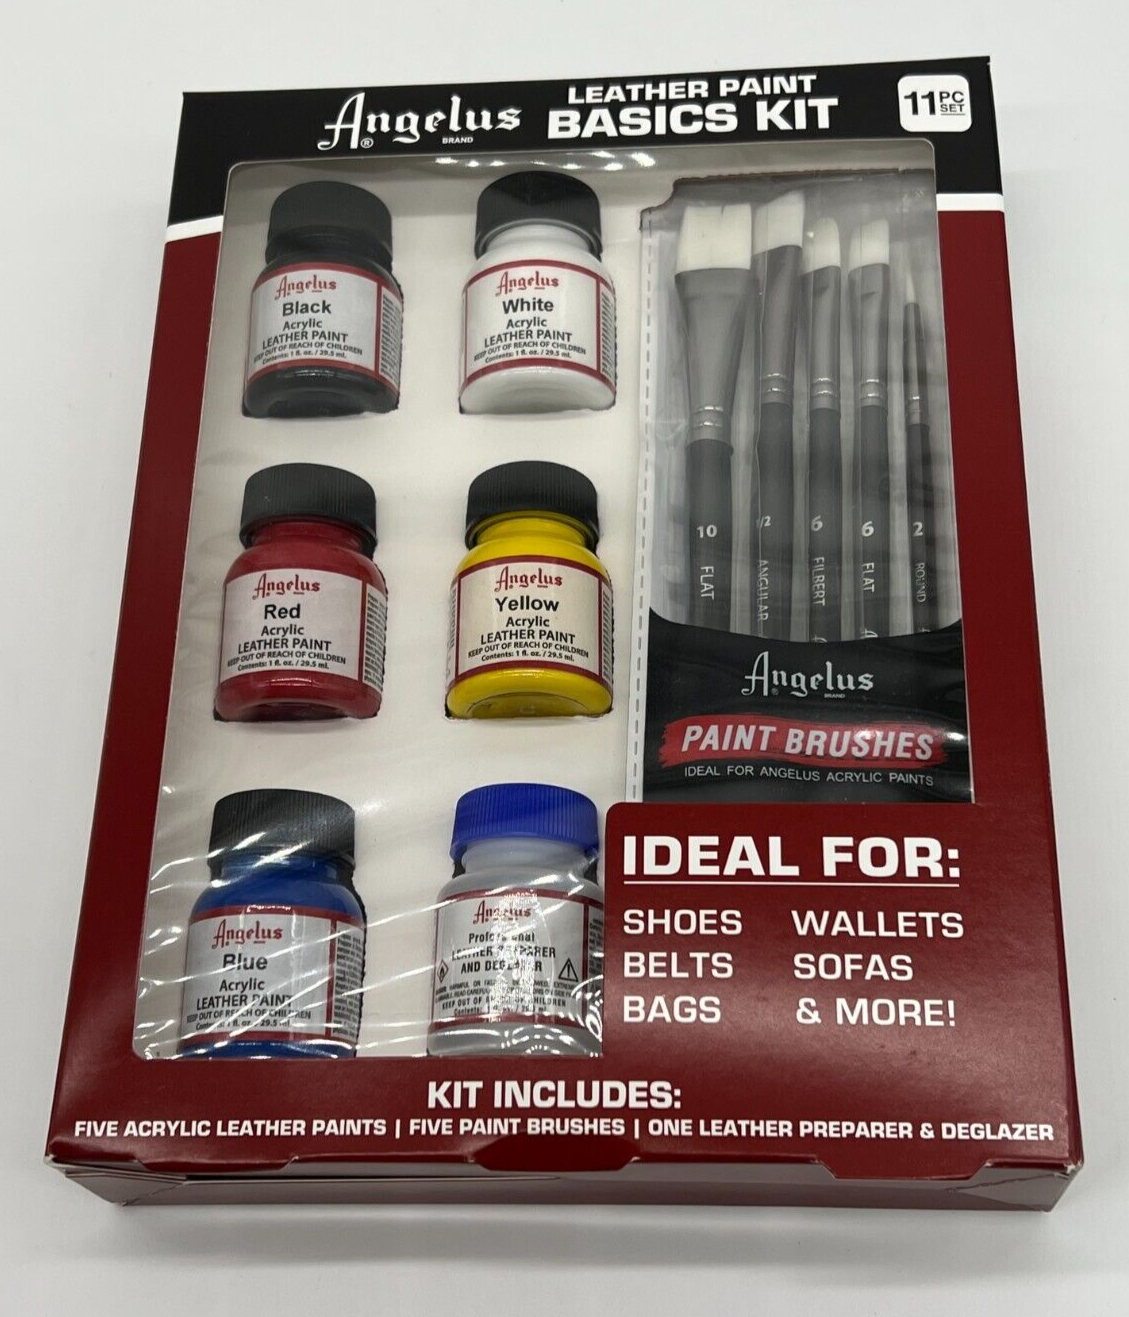 NEW Angelus Leather Paint Basics Starter Kit 11-pc Paints, Brushes, Deglazer - $38.61